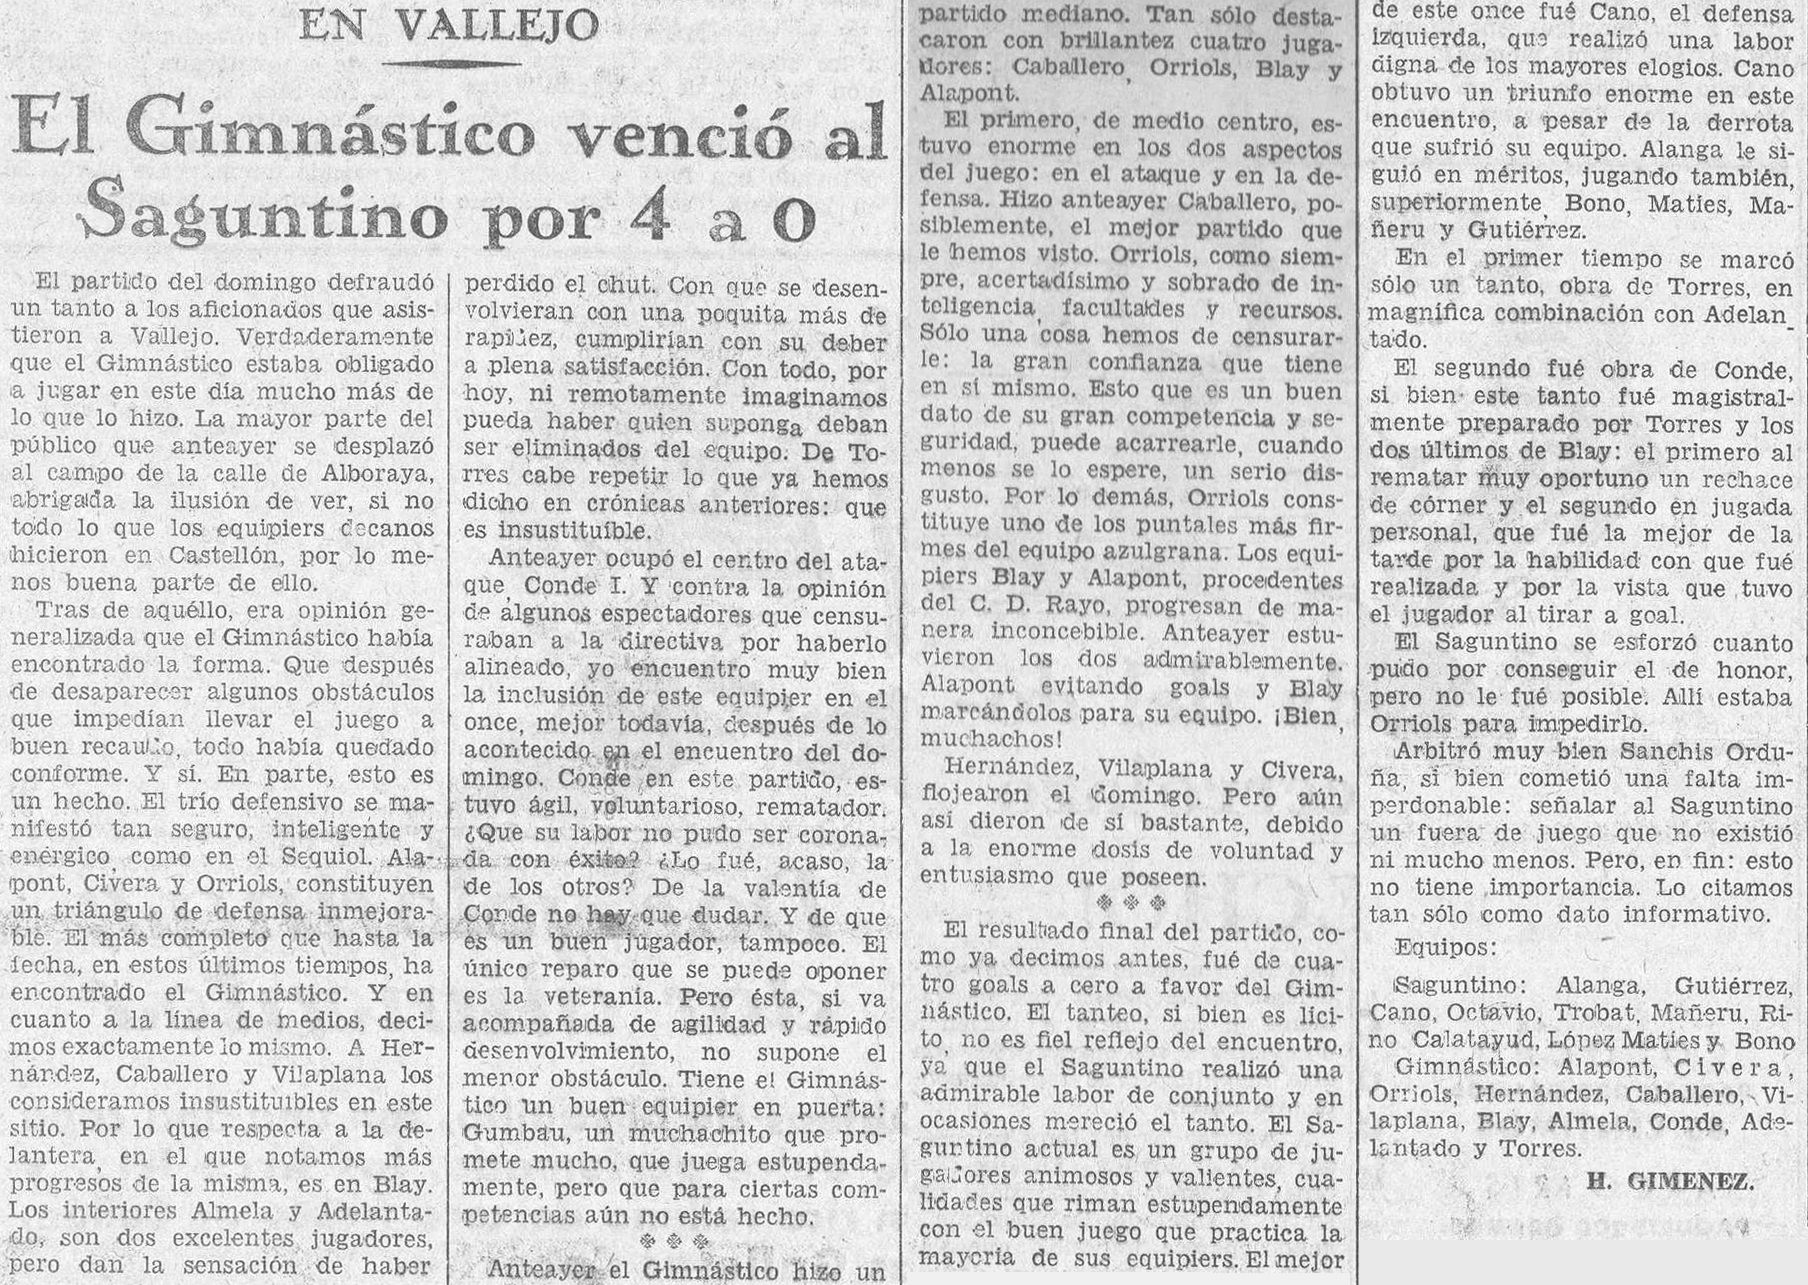 1932.10.09 (9 октября 1932), Гимнастико - Атлетик Сагунтино, 4-0.jpg